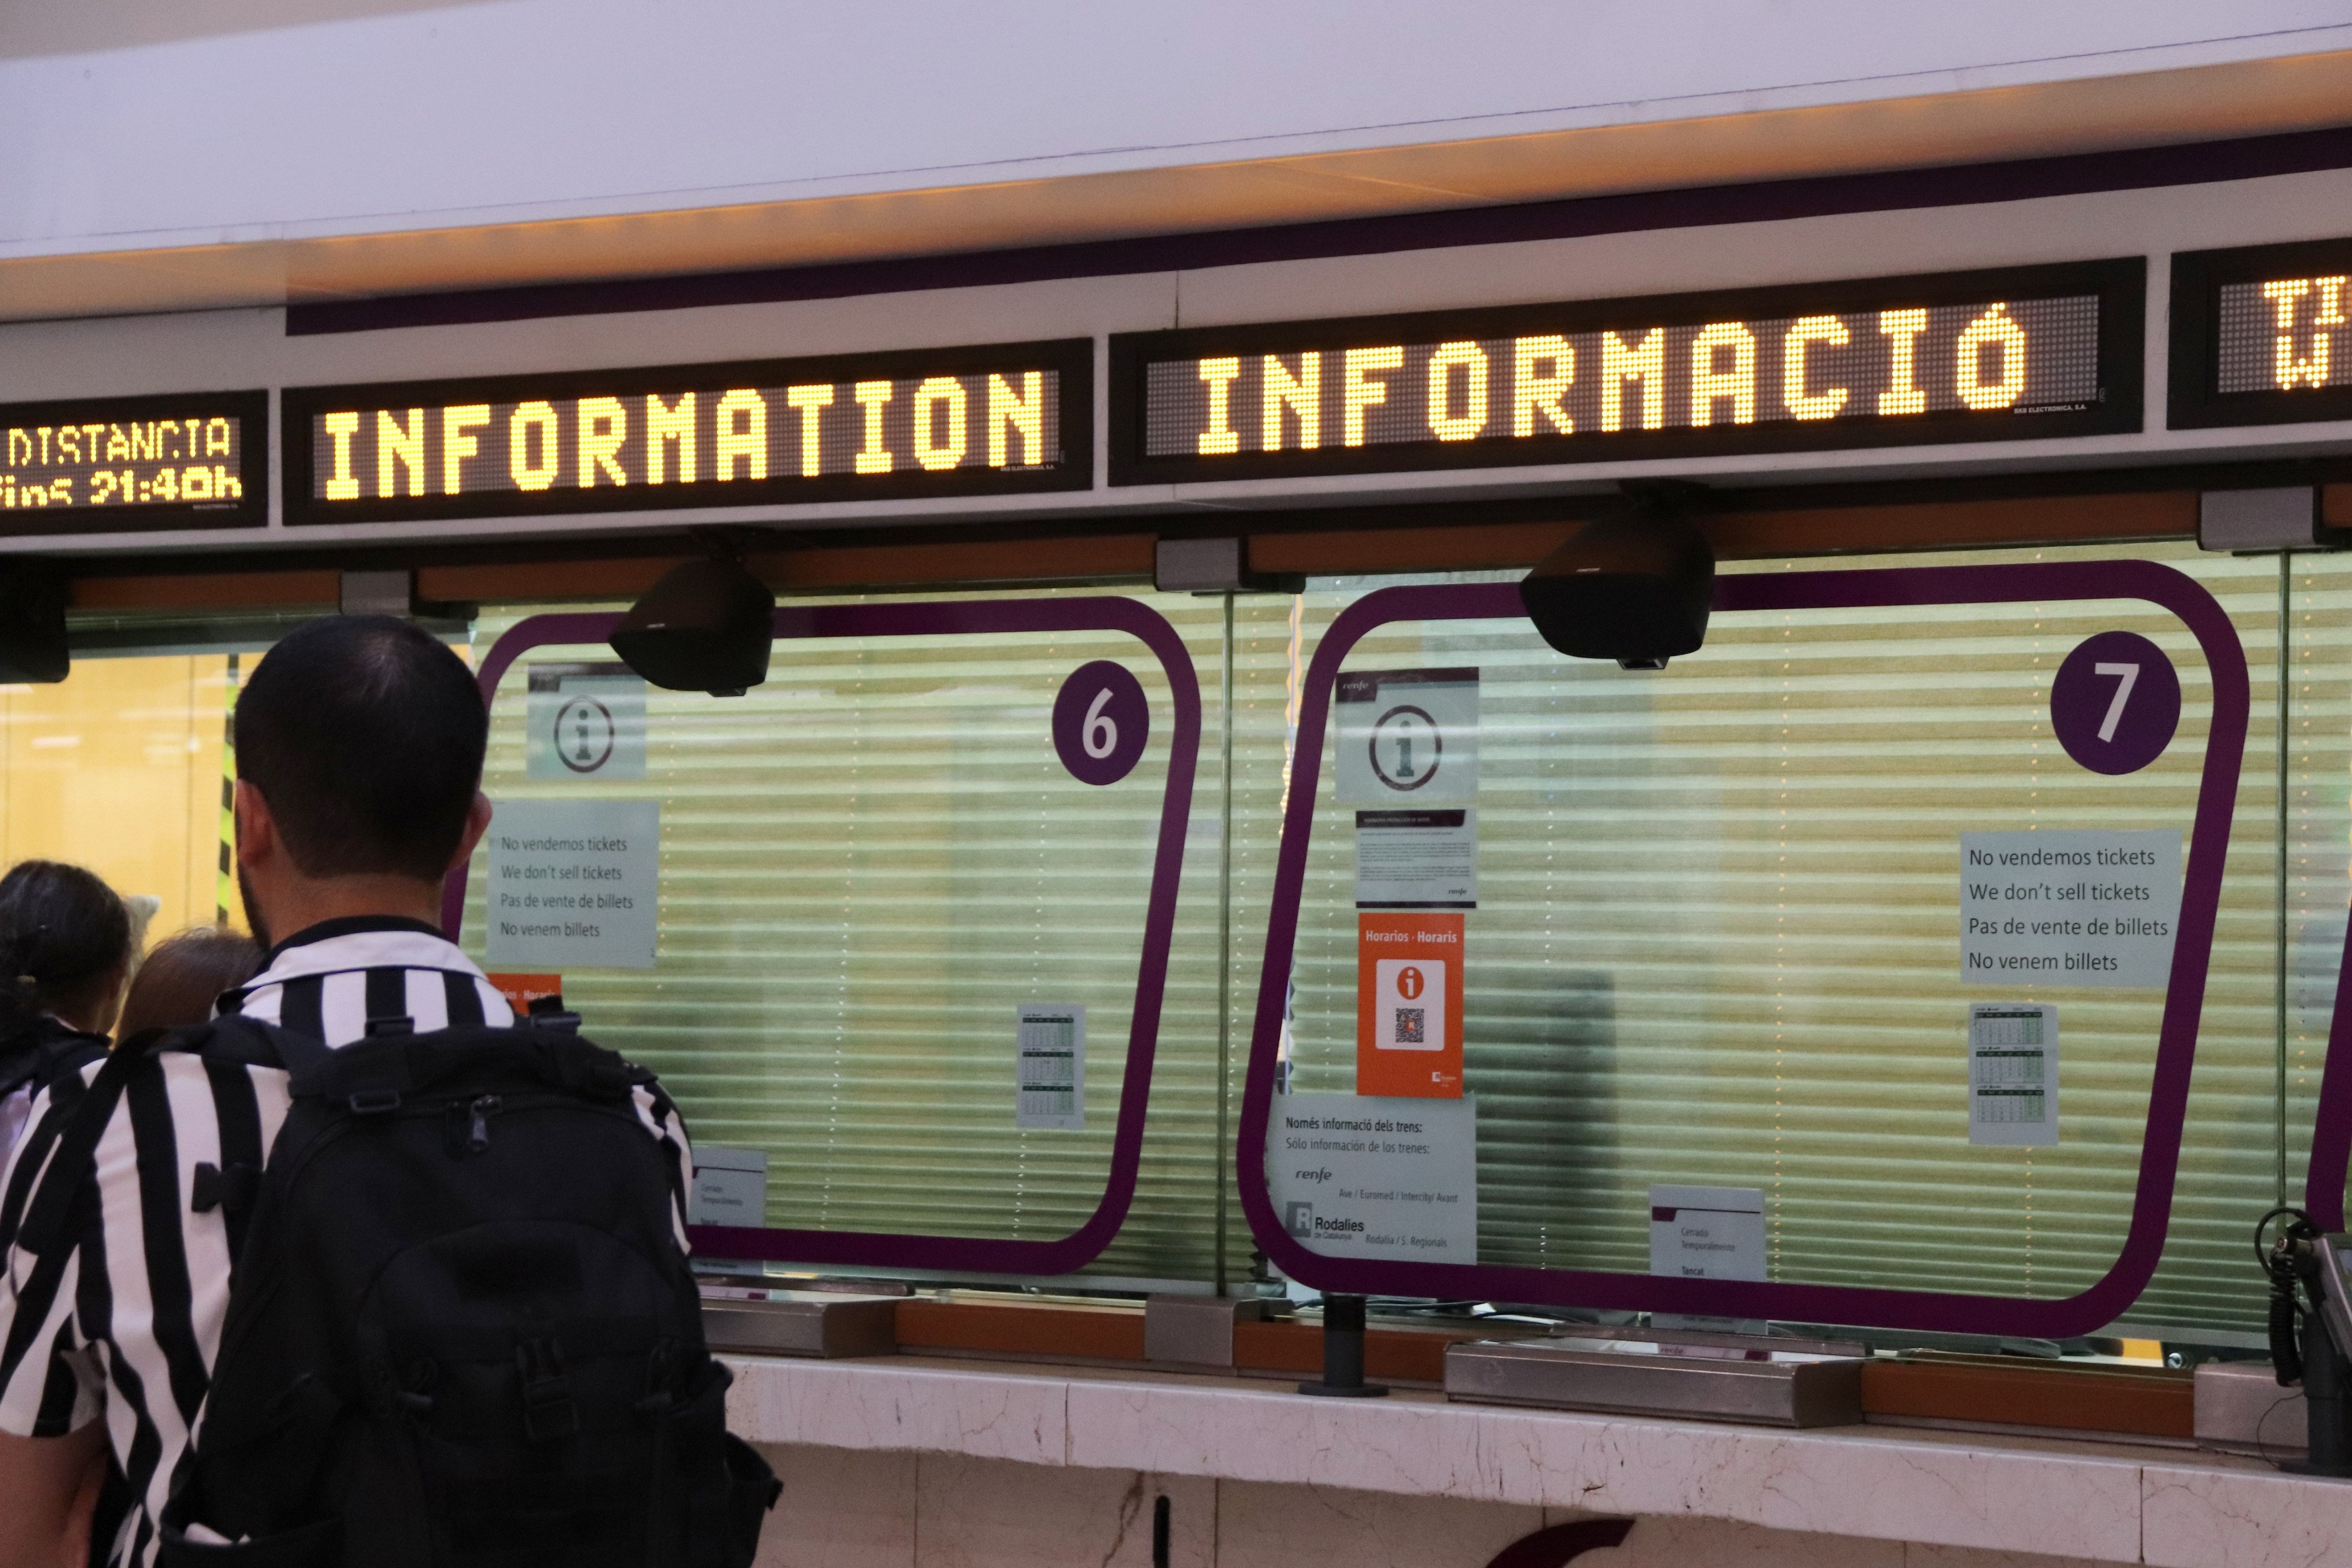 La avería de Gavà impacta de lleno también en usuarios de trenes regionales: "Es un caos"